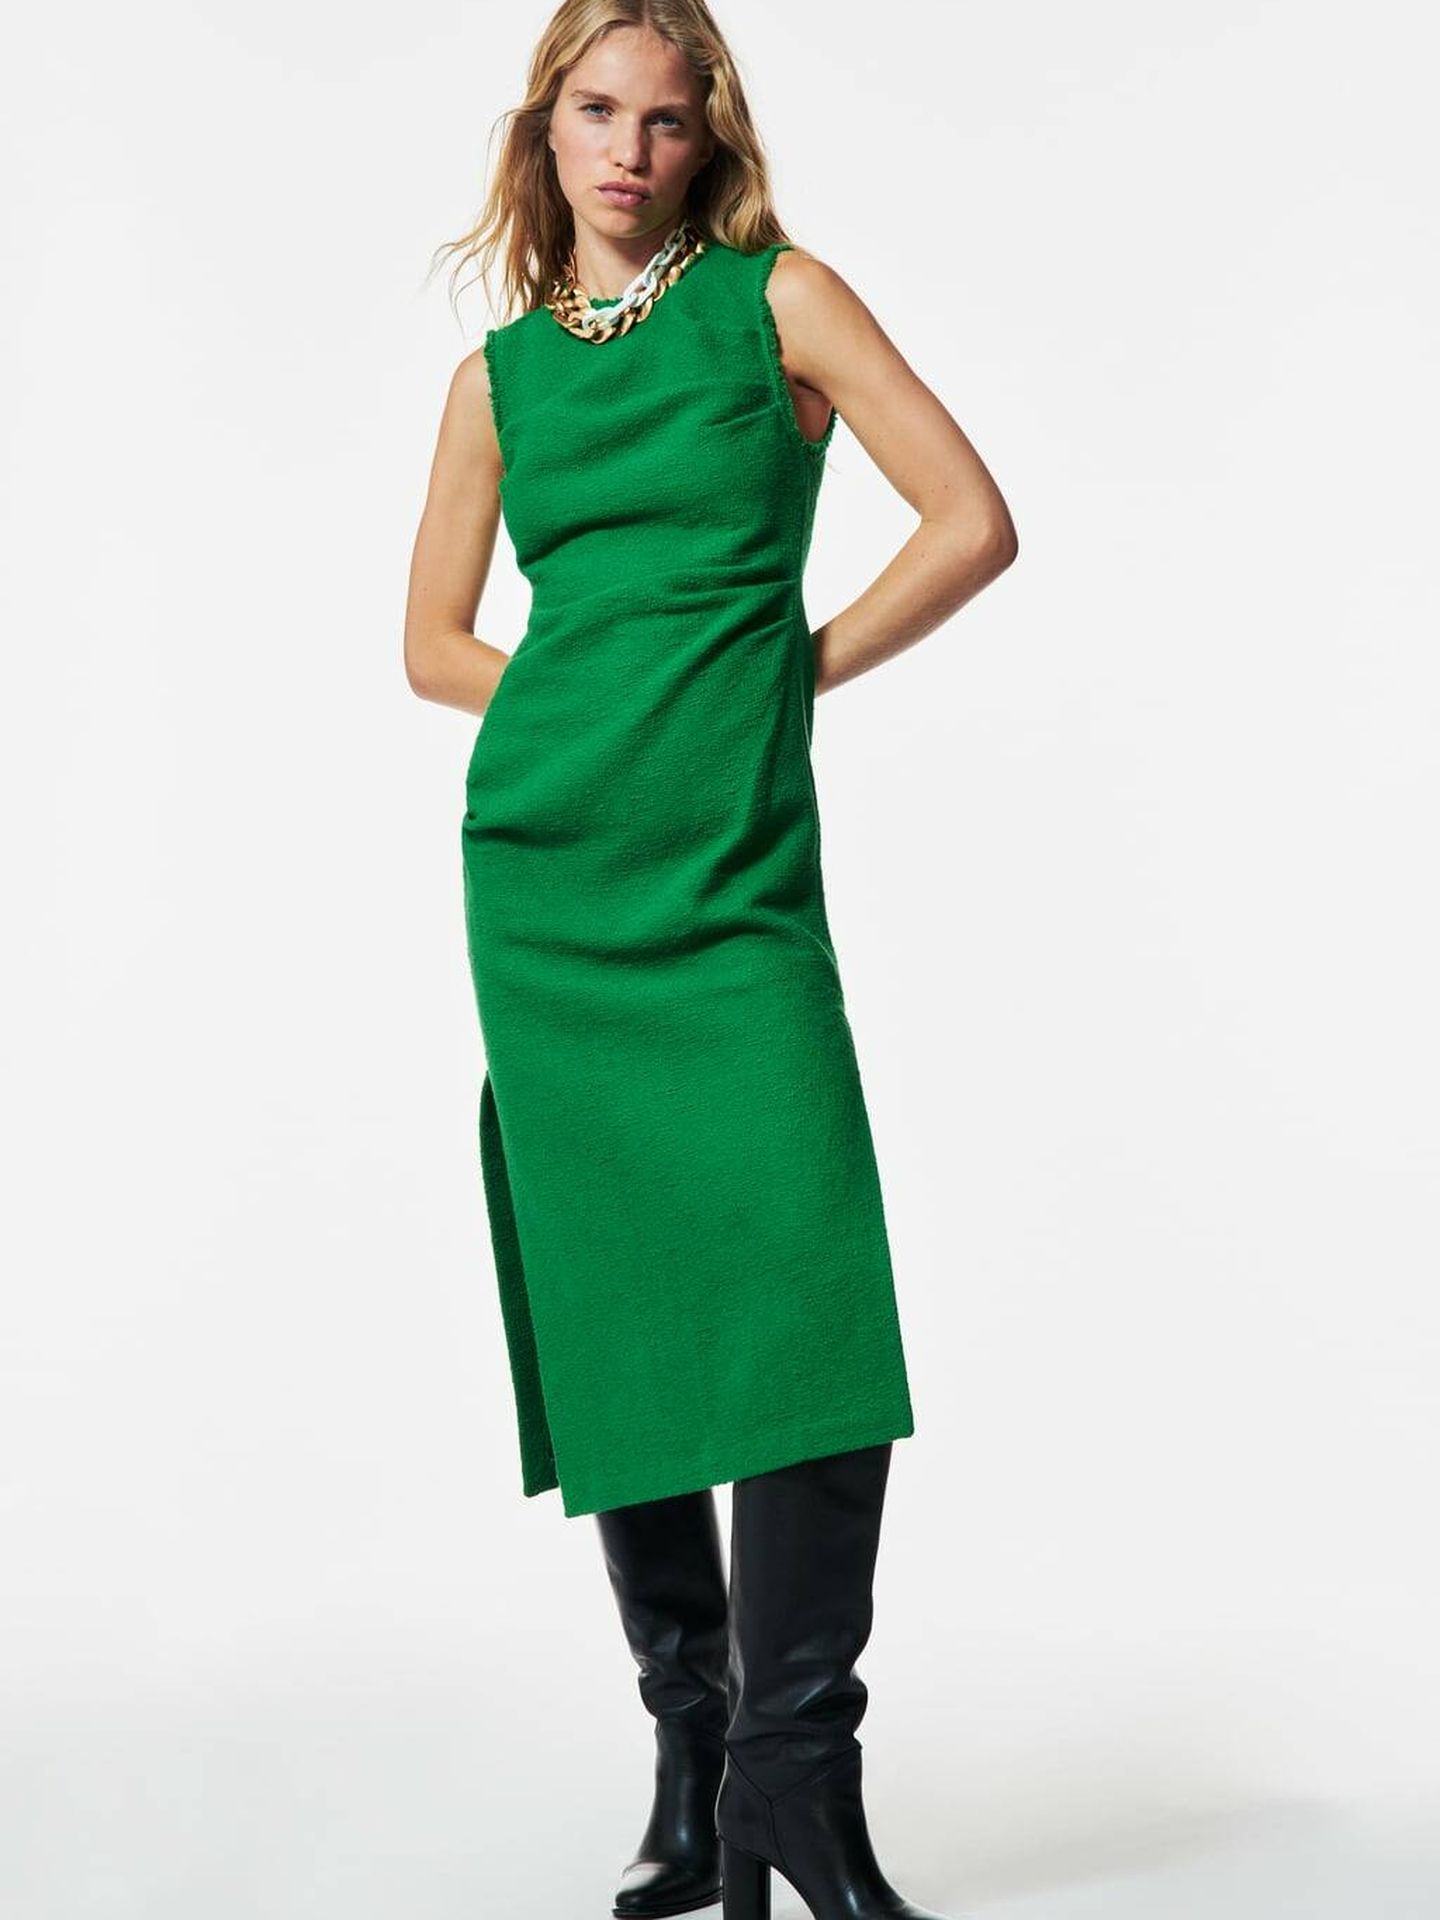 Vestido verde de Zara. (Cortesía)